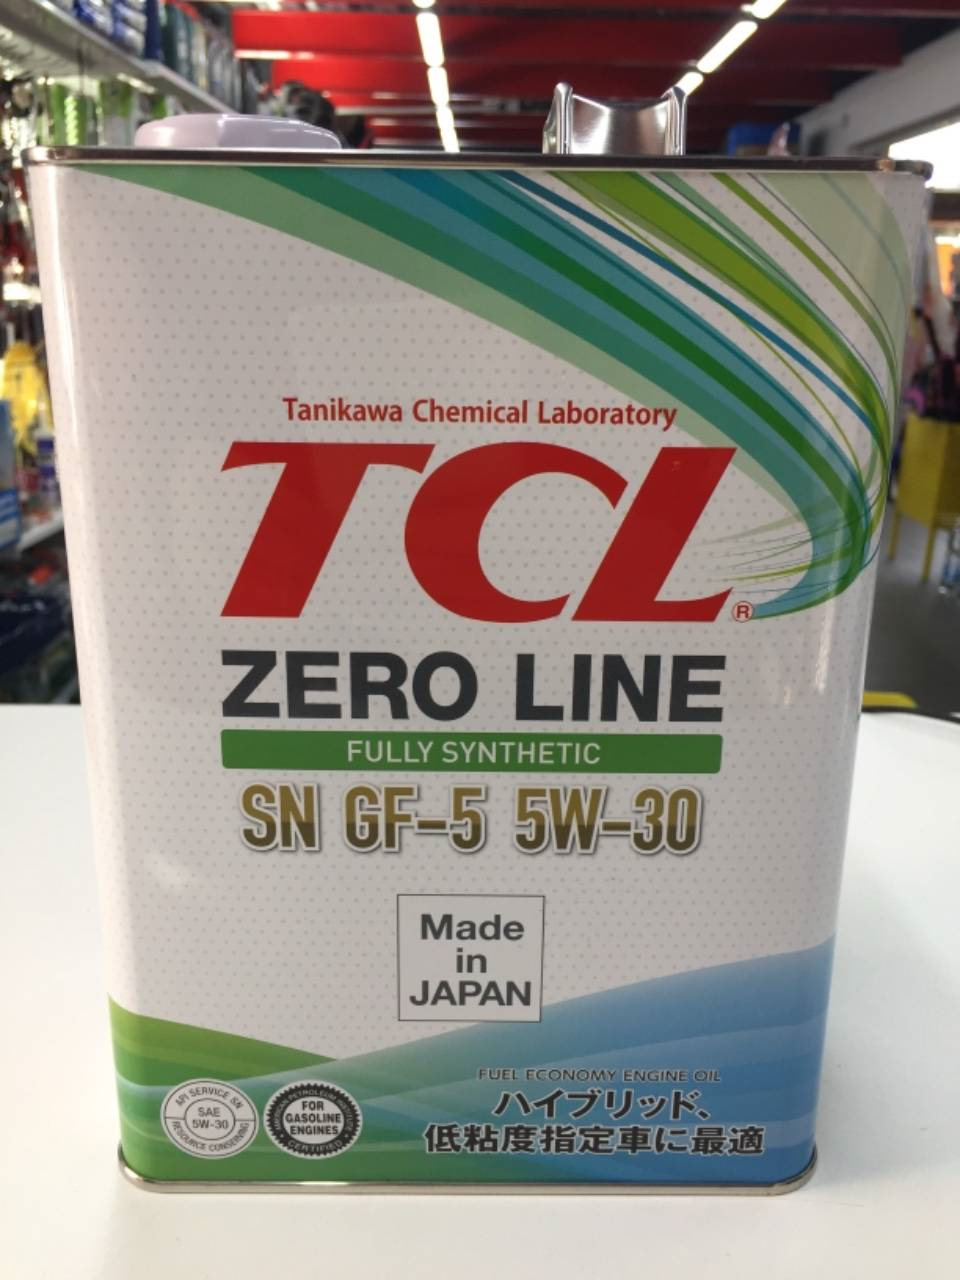 Tcl 5w30 купить. TCL Zero line 5w30. TCL Zero line 5w-20. TCL SN gf-5 5w-30. TCL 5w30 SP.